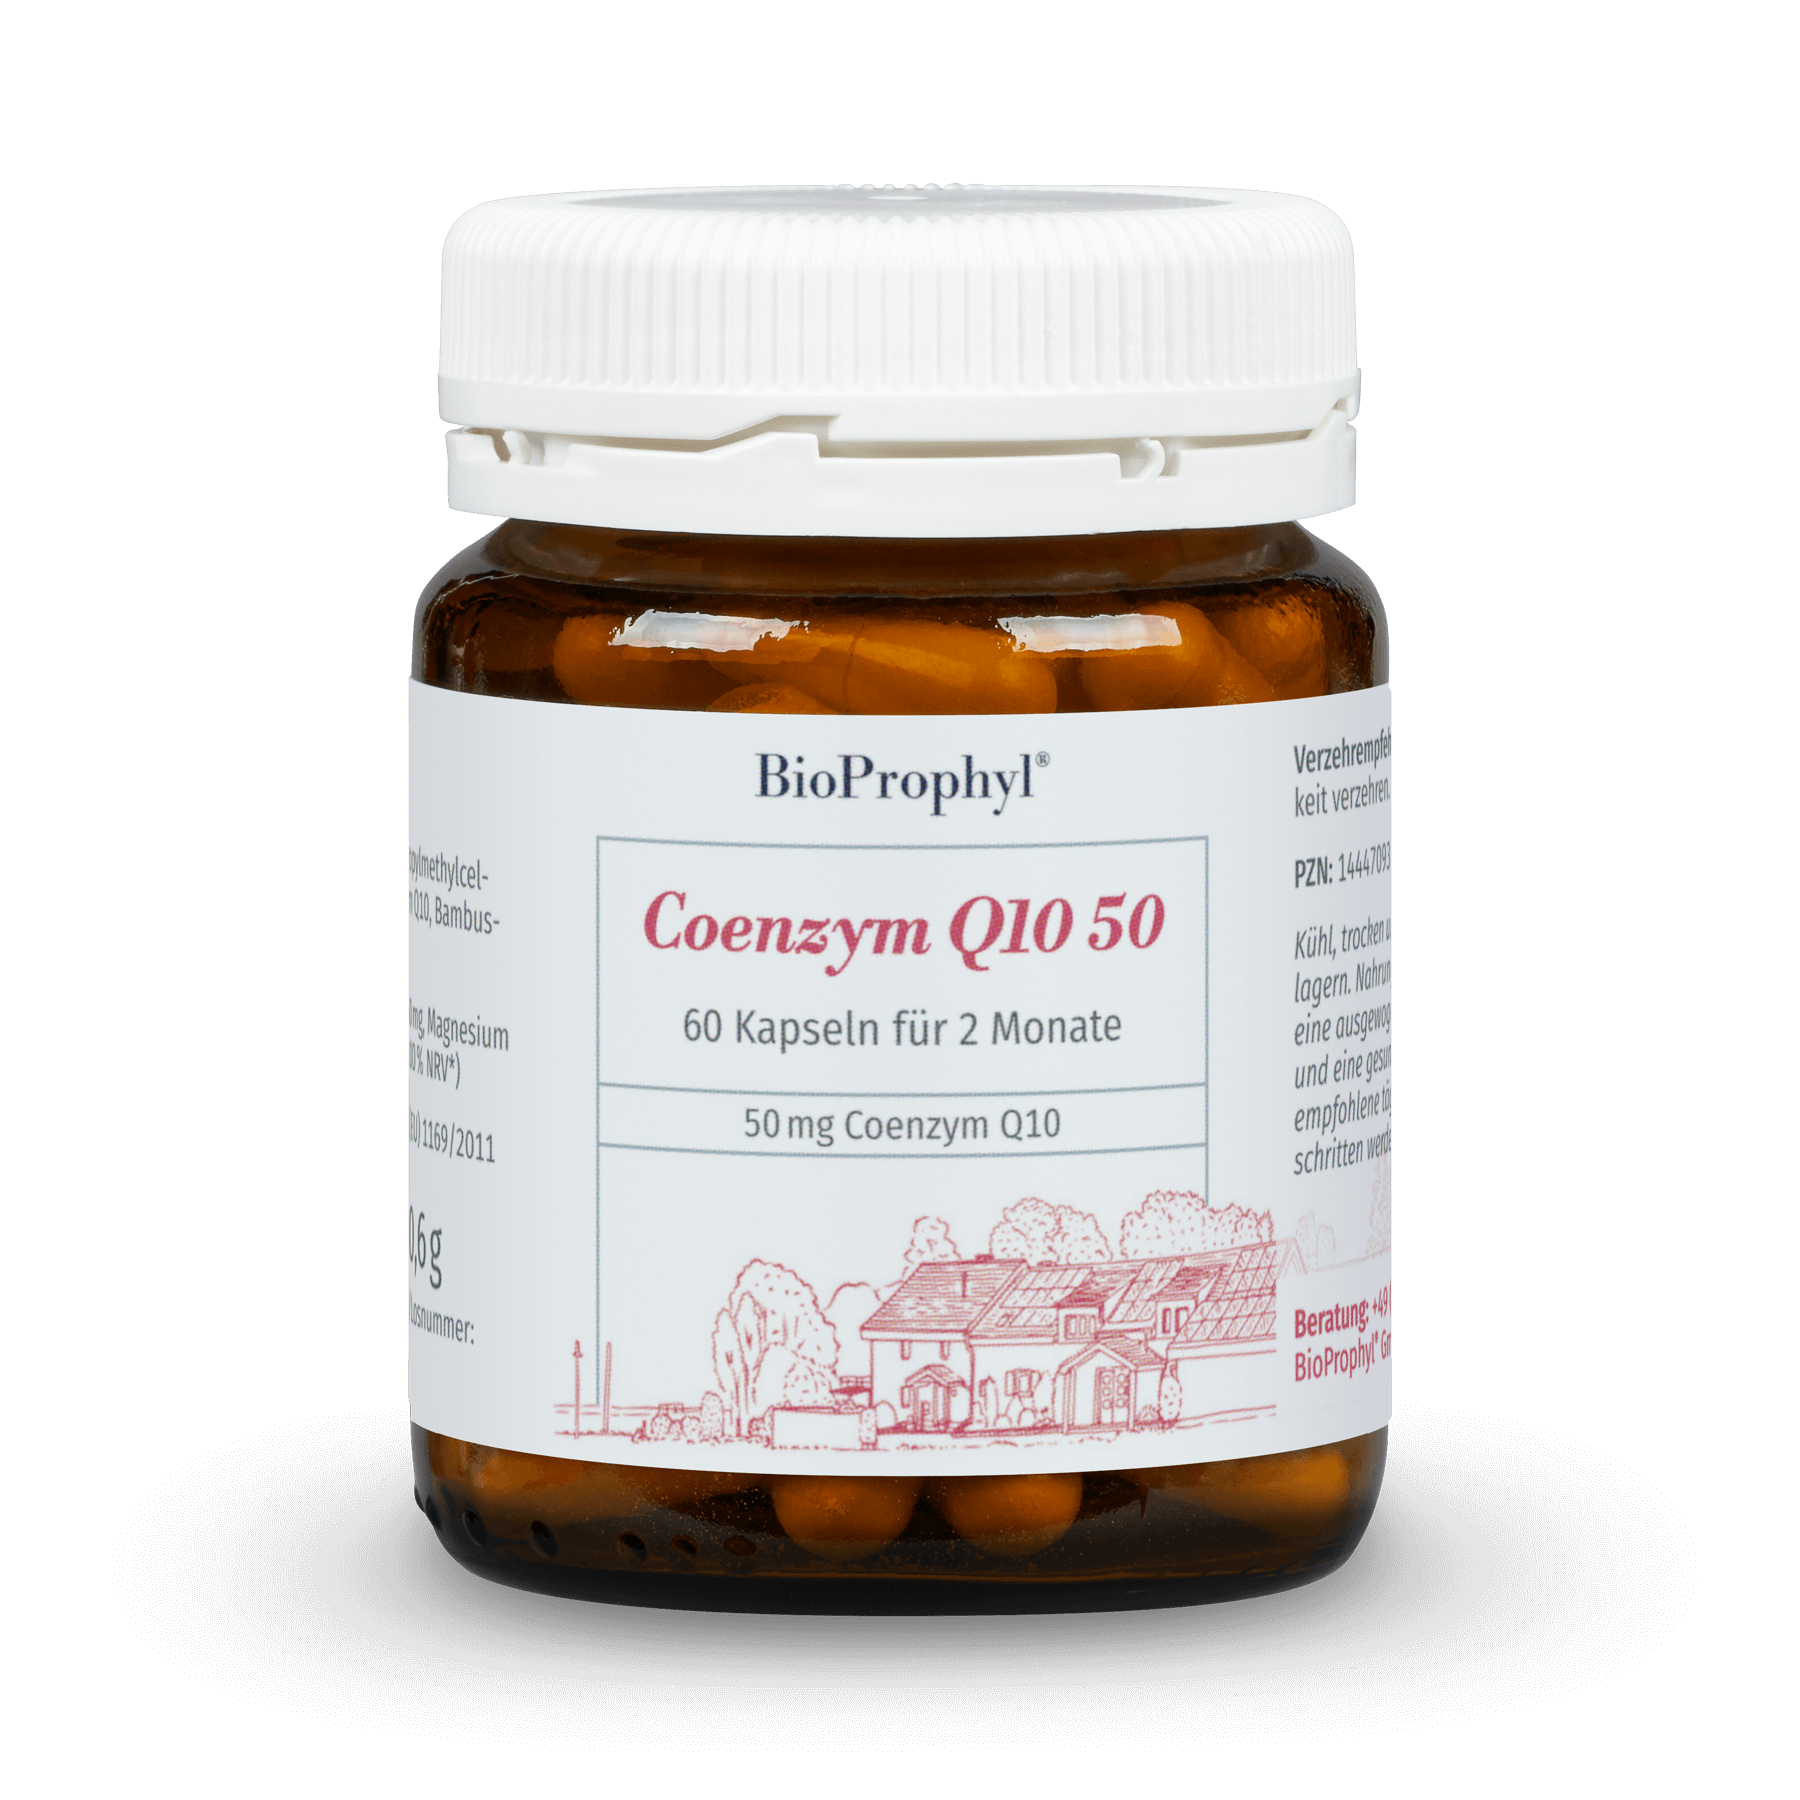 BioProphyl Coenzym Q10 50 60 plantaardige capsules met 50 mg co-enzym Q10, magnesium en vitamine B1